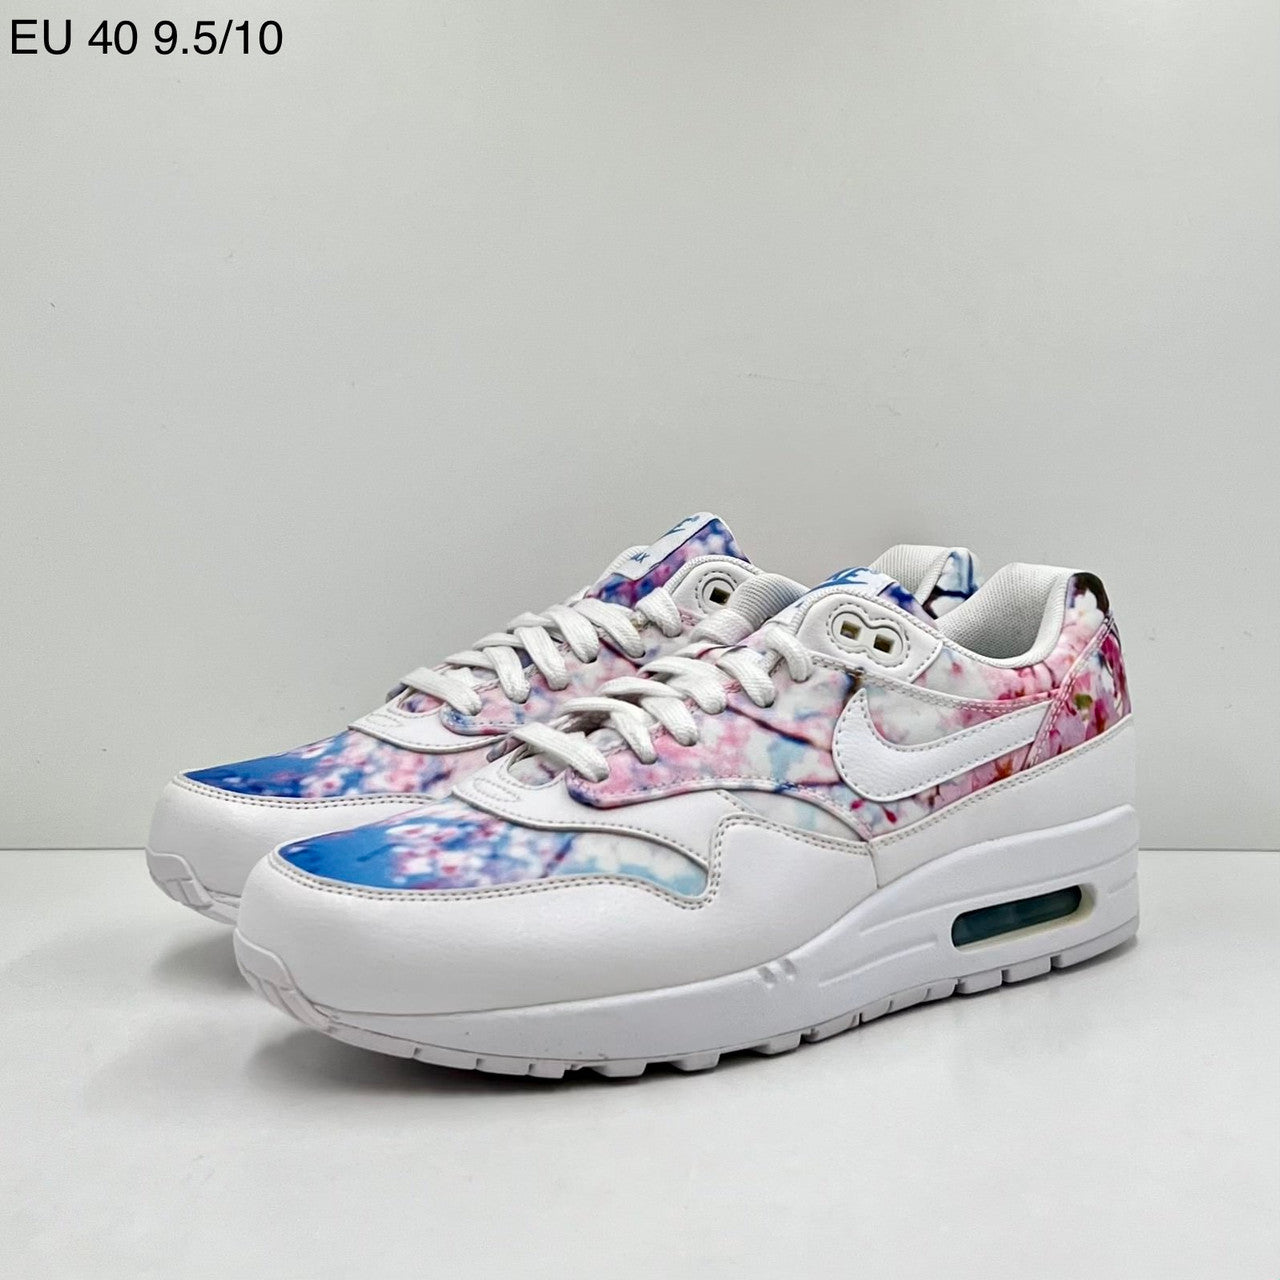 Nike Air Max 1 Cherry Blossom (W)